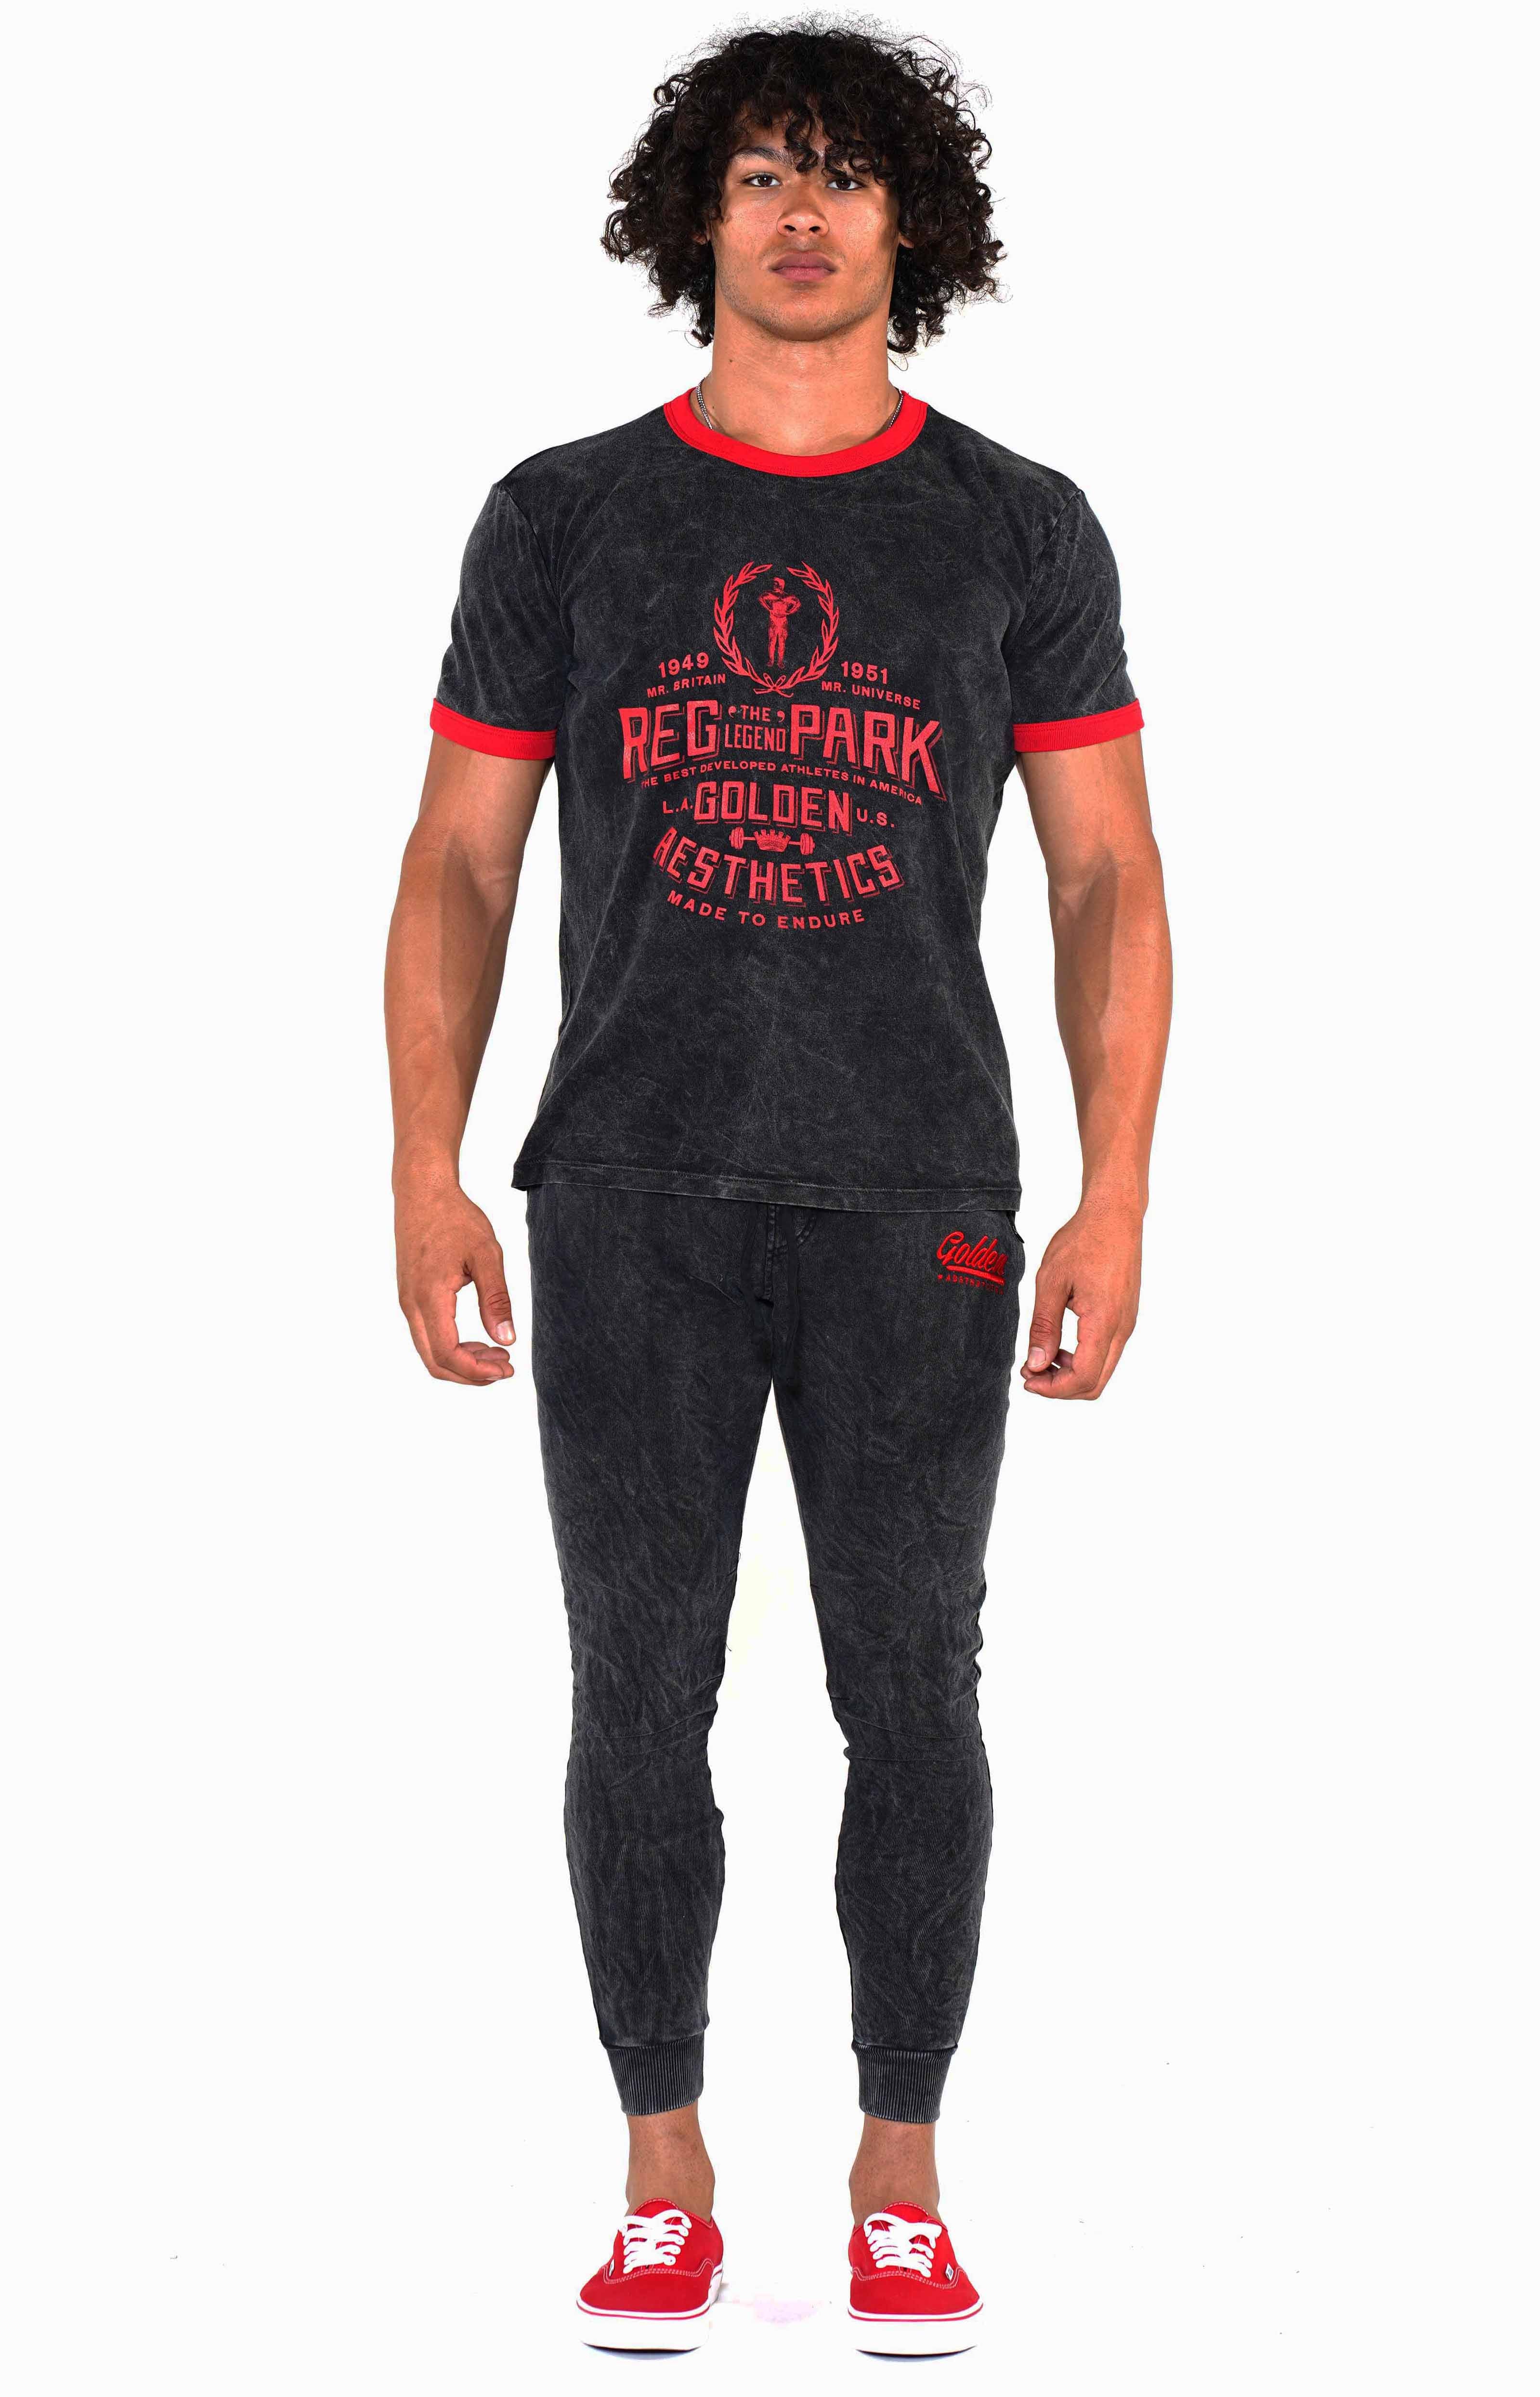 Men's Mineral Black/Red Reg Park Ringer T-Shirt - Golden Aesthetics